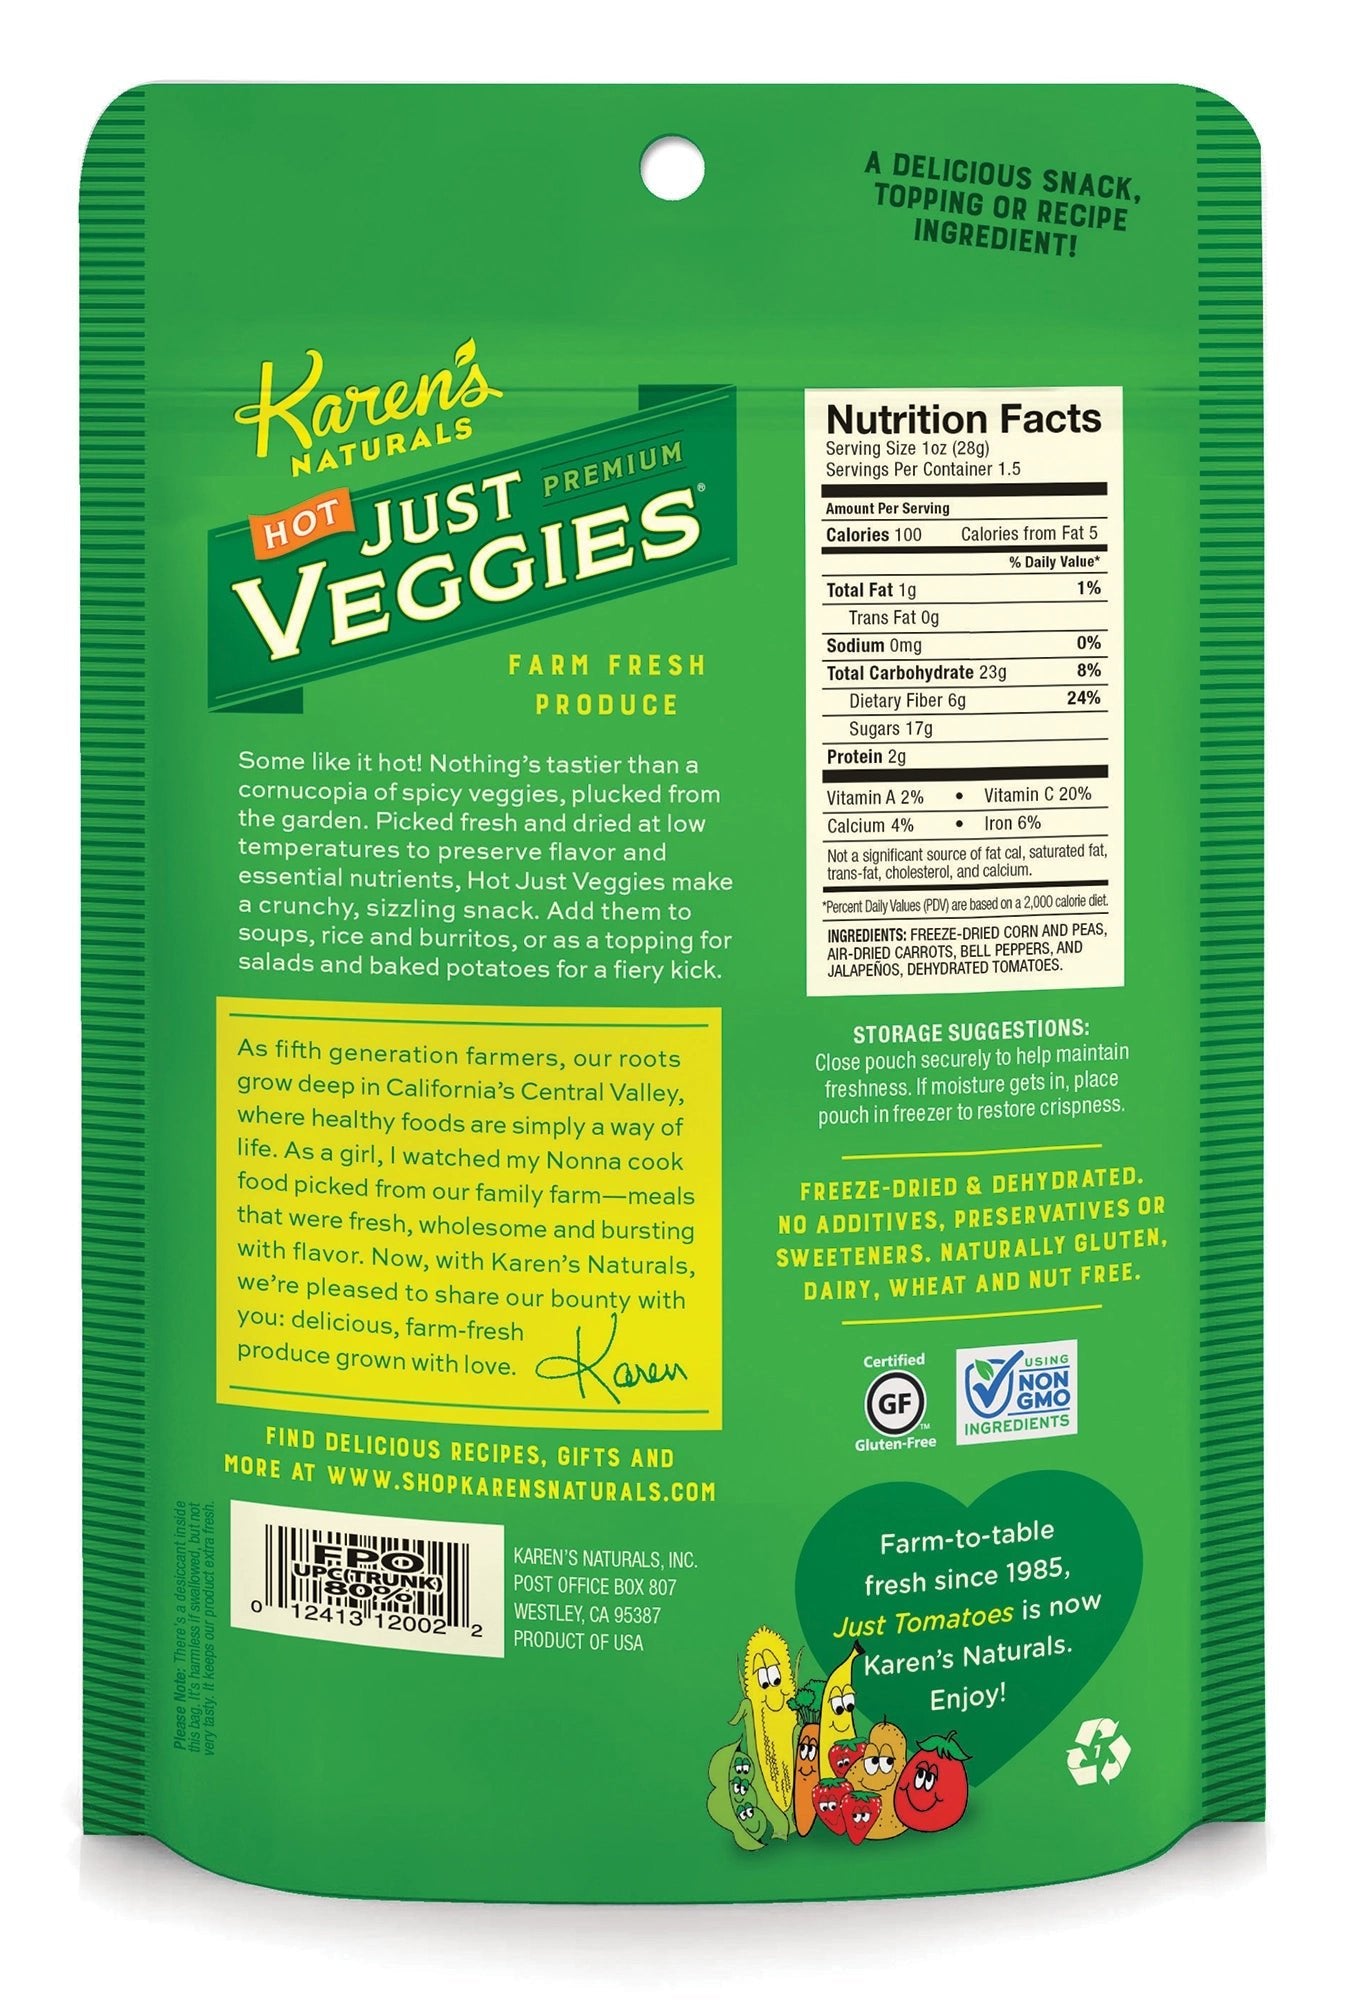 Just Hot Veggies - Karen's Naturals